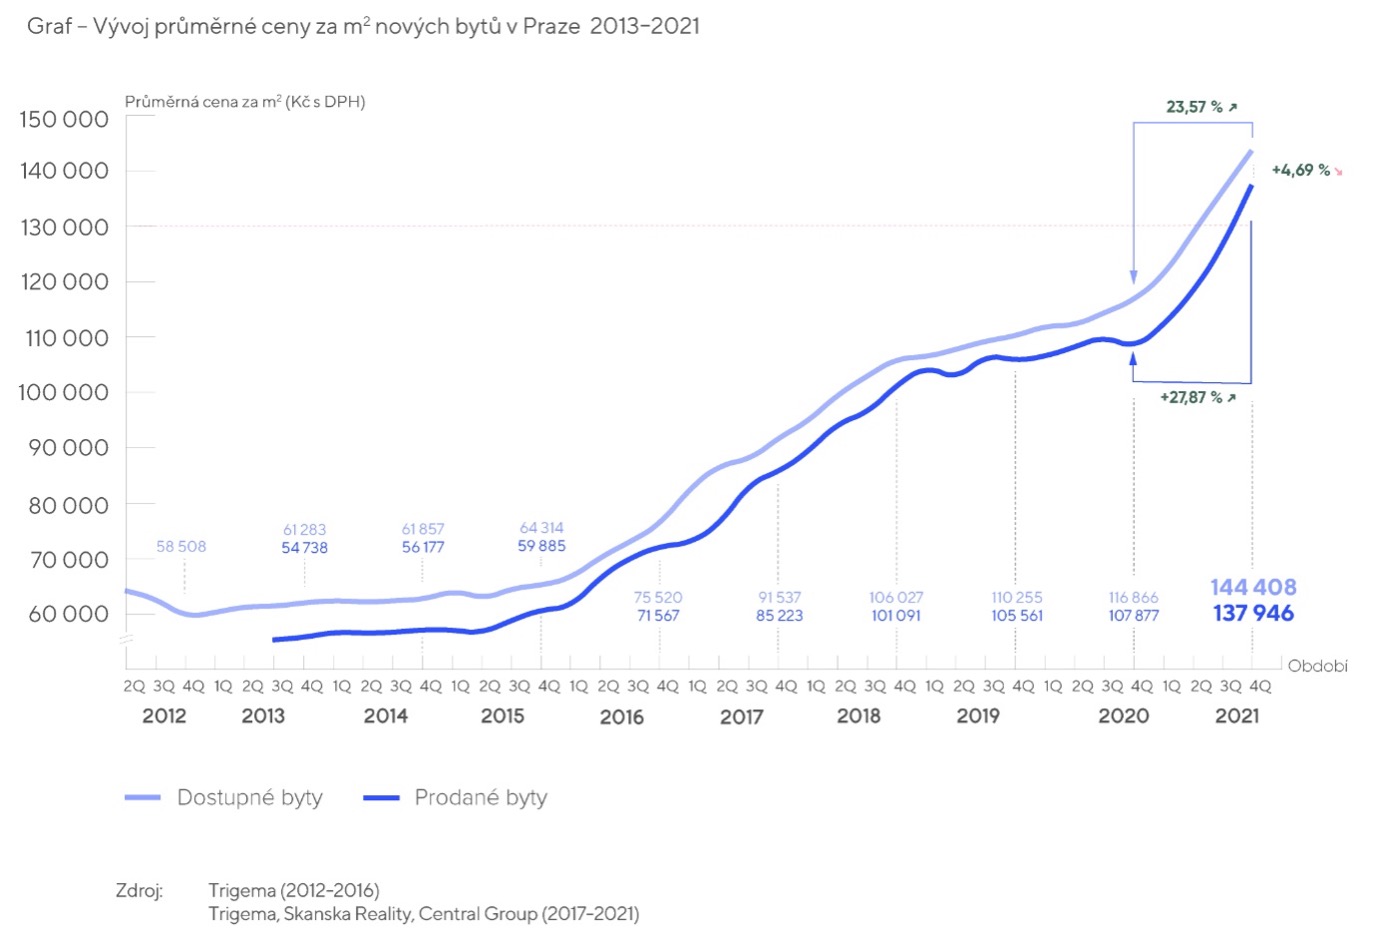 Vývoj průměrné ceny za m2 nových bytů v Praze 2011-2021